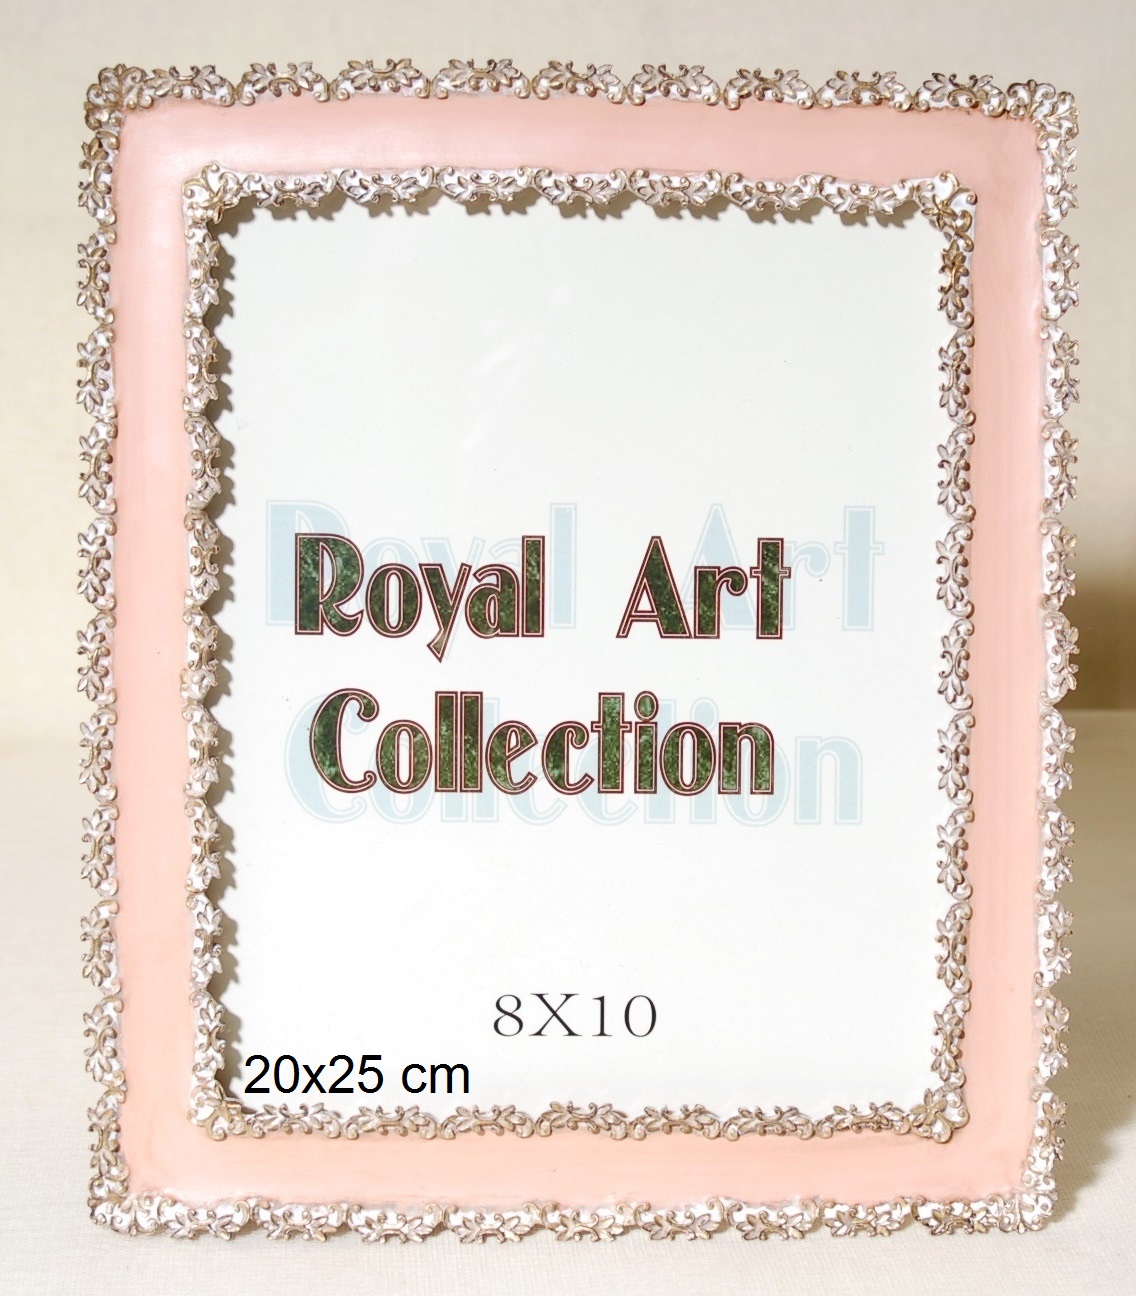 Κορνίζα Πολυεστερική Λευκή-Ροζ Royal Art 20x25εκ. YUA3/327/81P (Χρώμα: Λευκό, Υλικό: Πολυεστερικό) - Royal Art Collection - YUA3/327/81P 112279